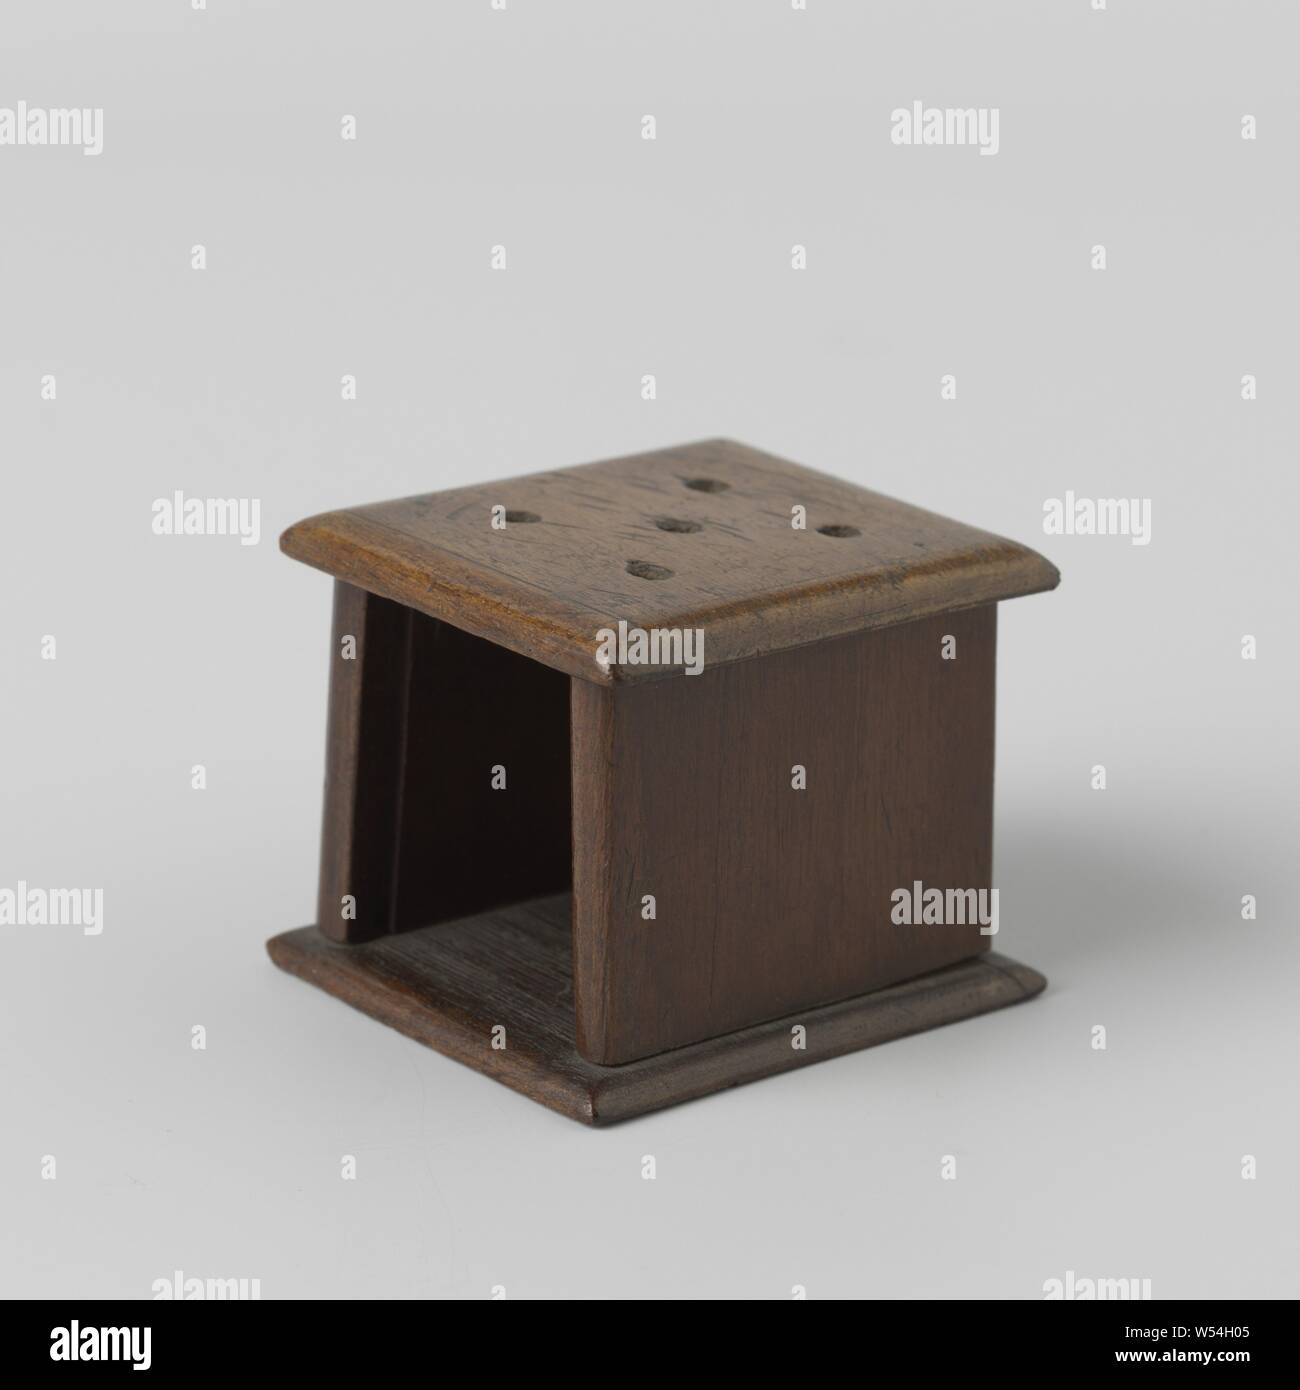 Möbel, Herd Eintopf (Doll's?) In Miniatur Mahagoni, Zugehörigkeit zu einem Buche Sessel, anonym, Niederlande, 1700 - 1800, Holz (Pflanzen), Mahagoni (Holz), h 4 cm x B 4,5 cm x T 5,8 cm Stockfoto